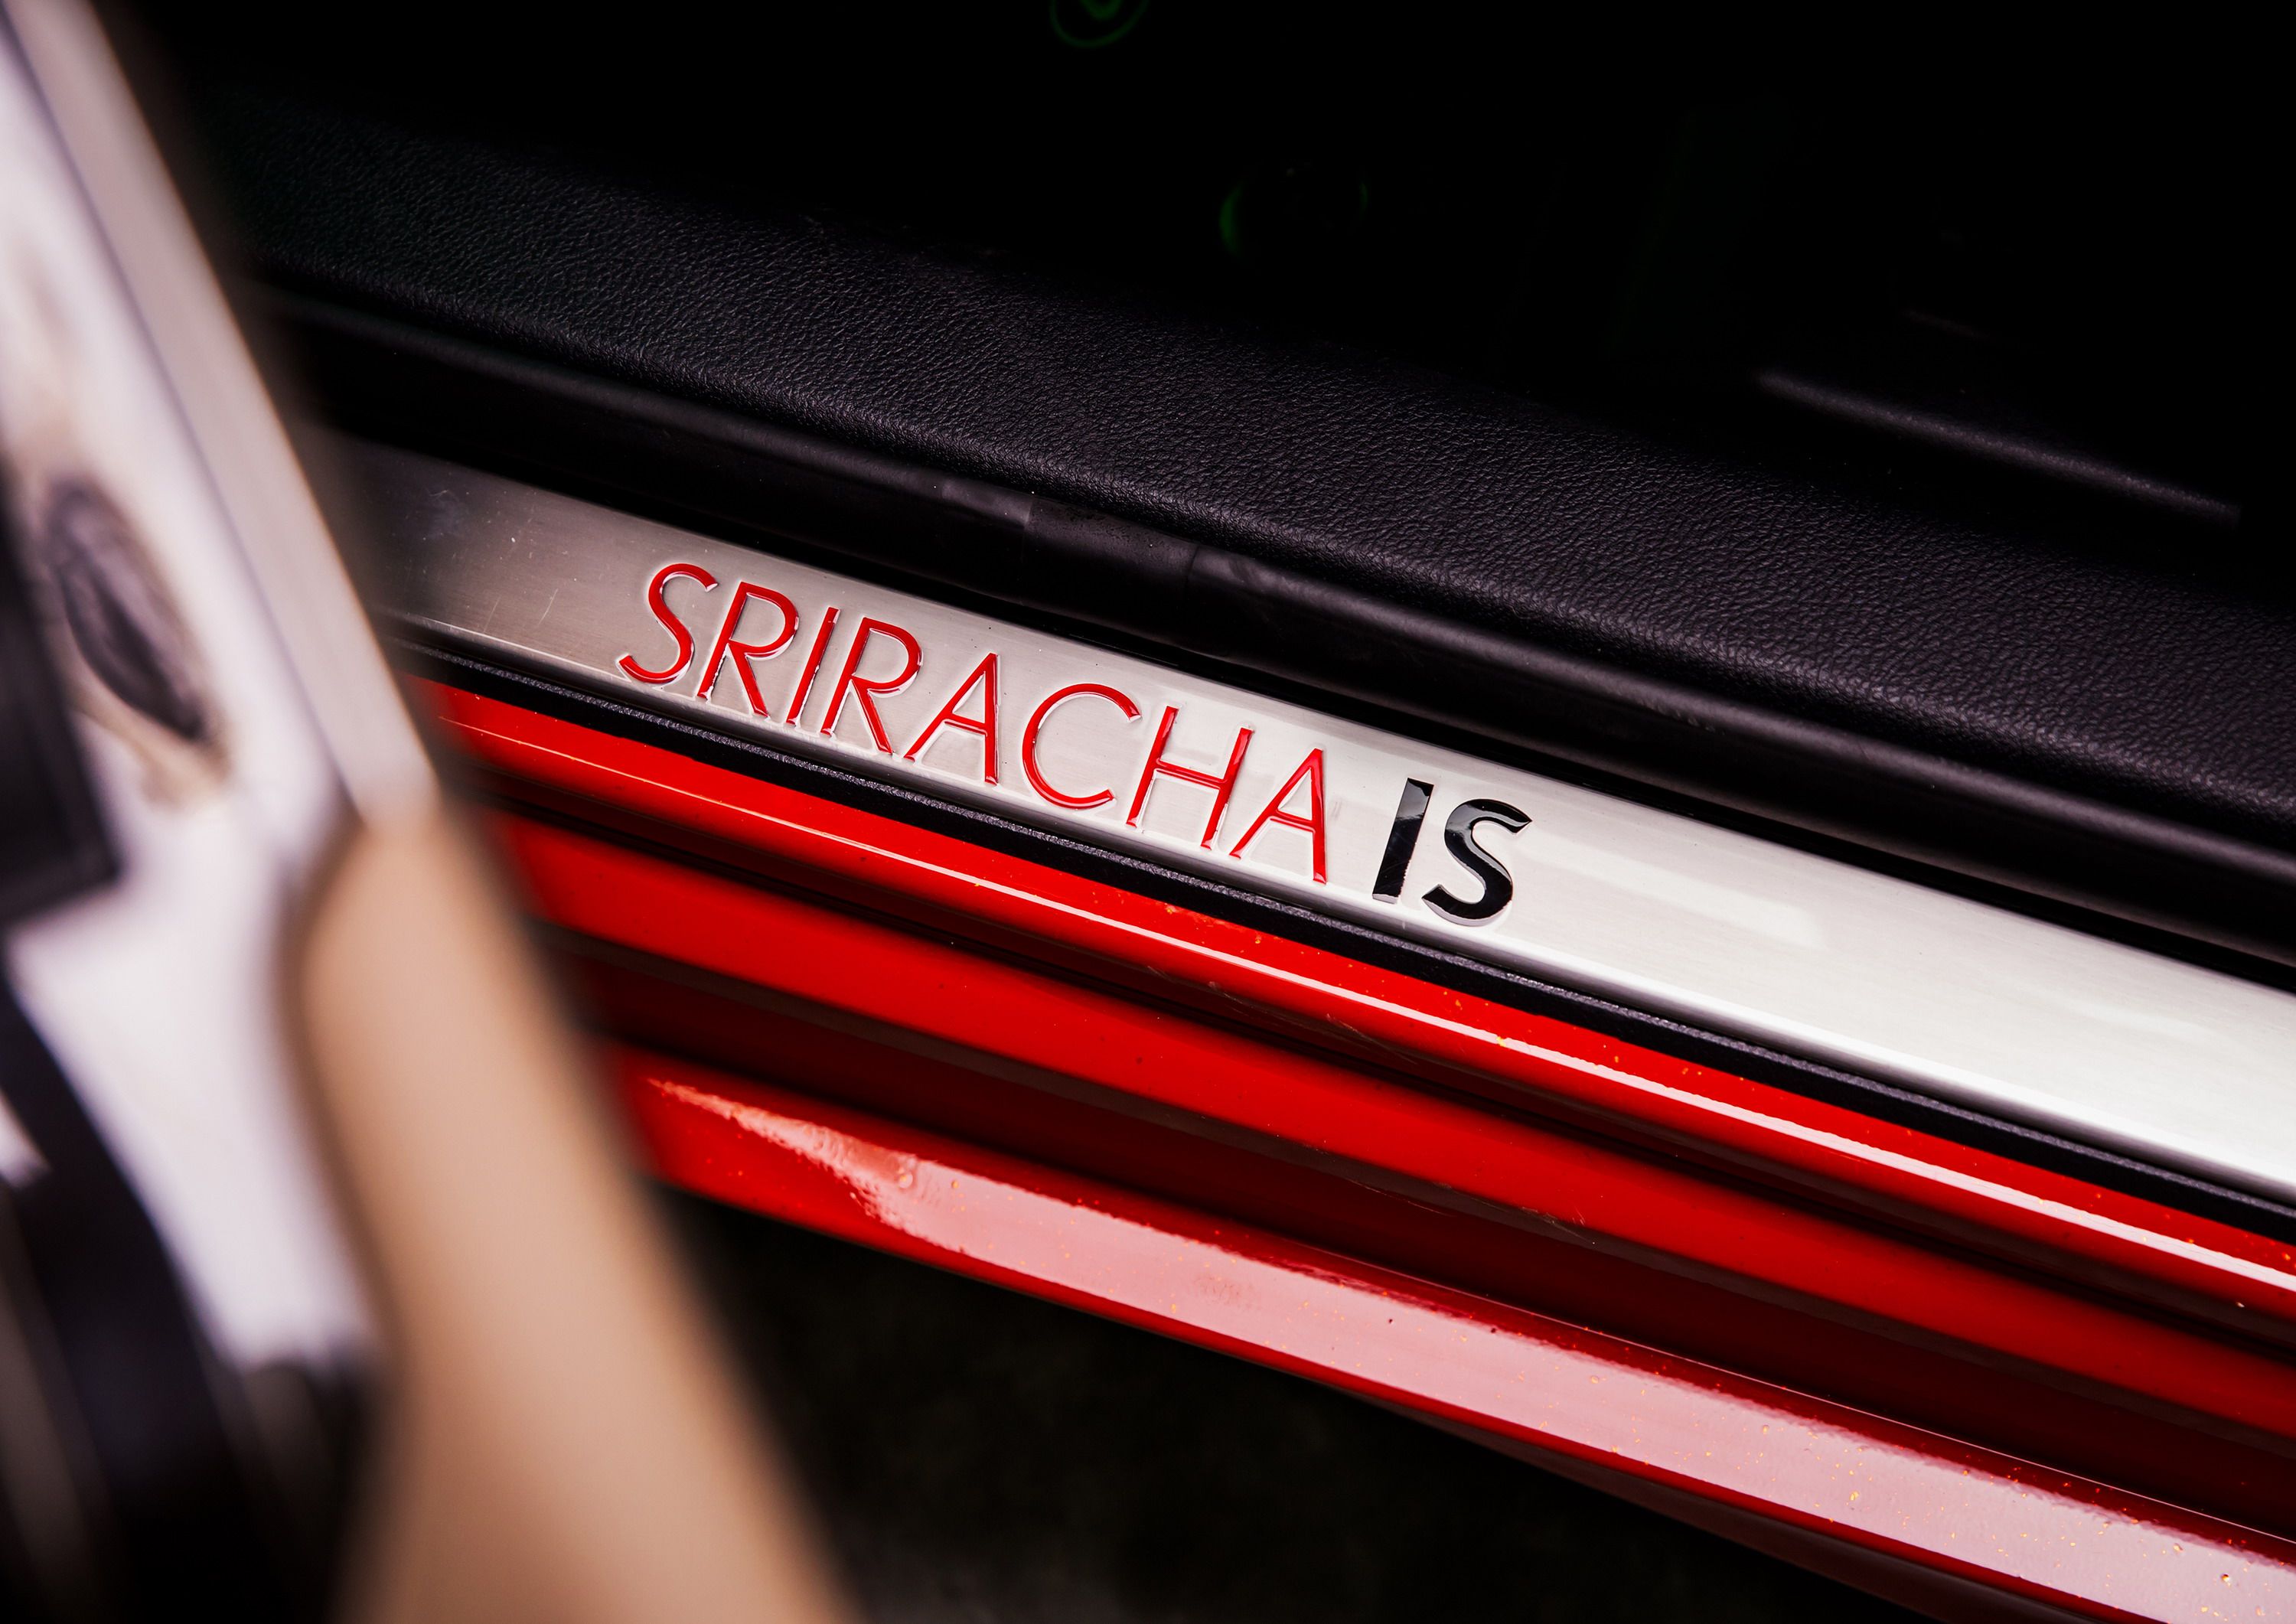 2017 Lexus Sriracha IS